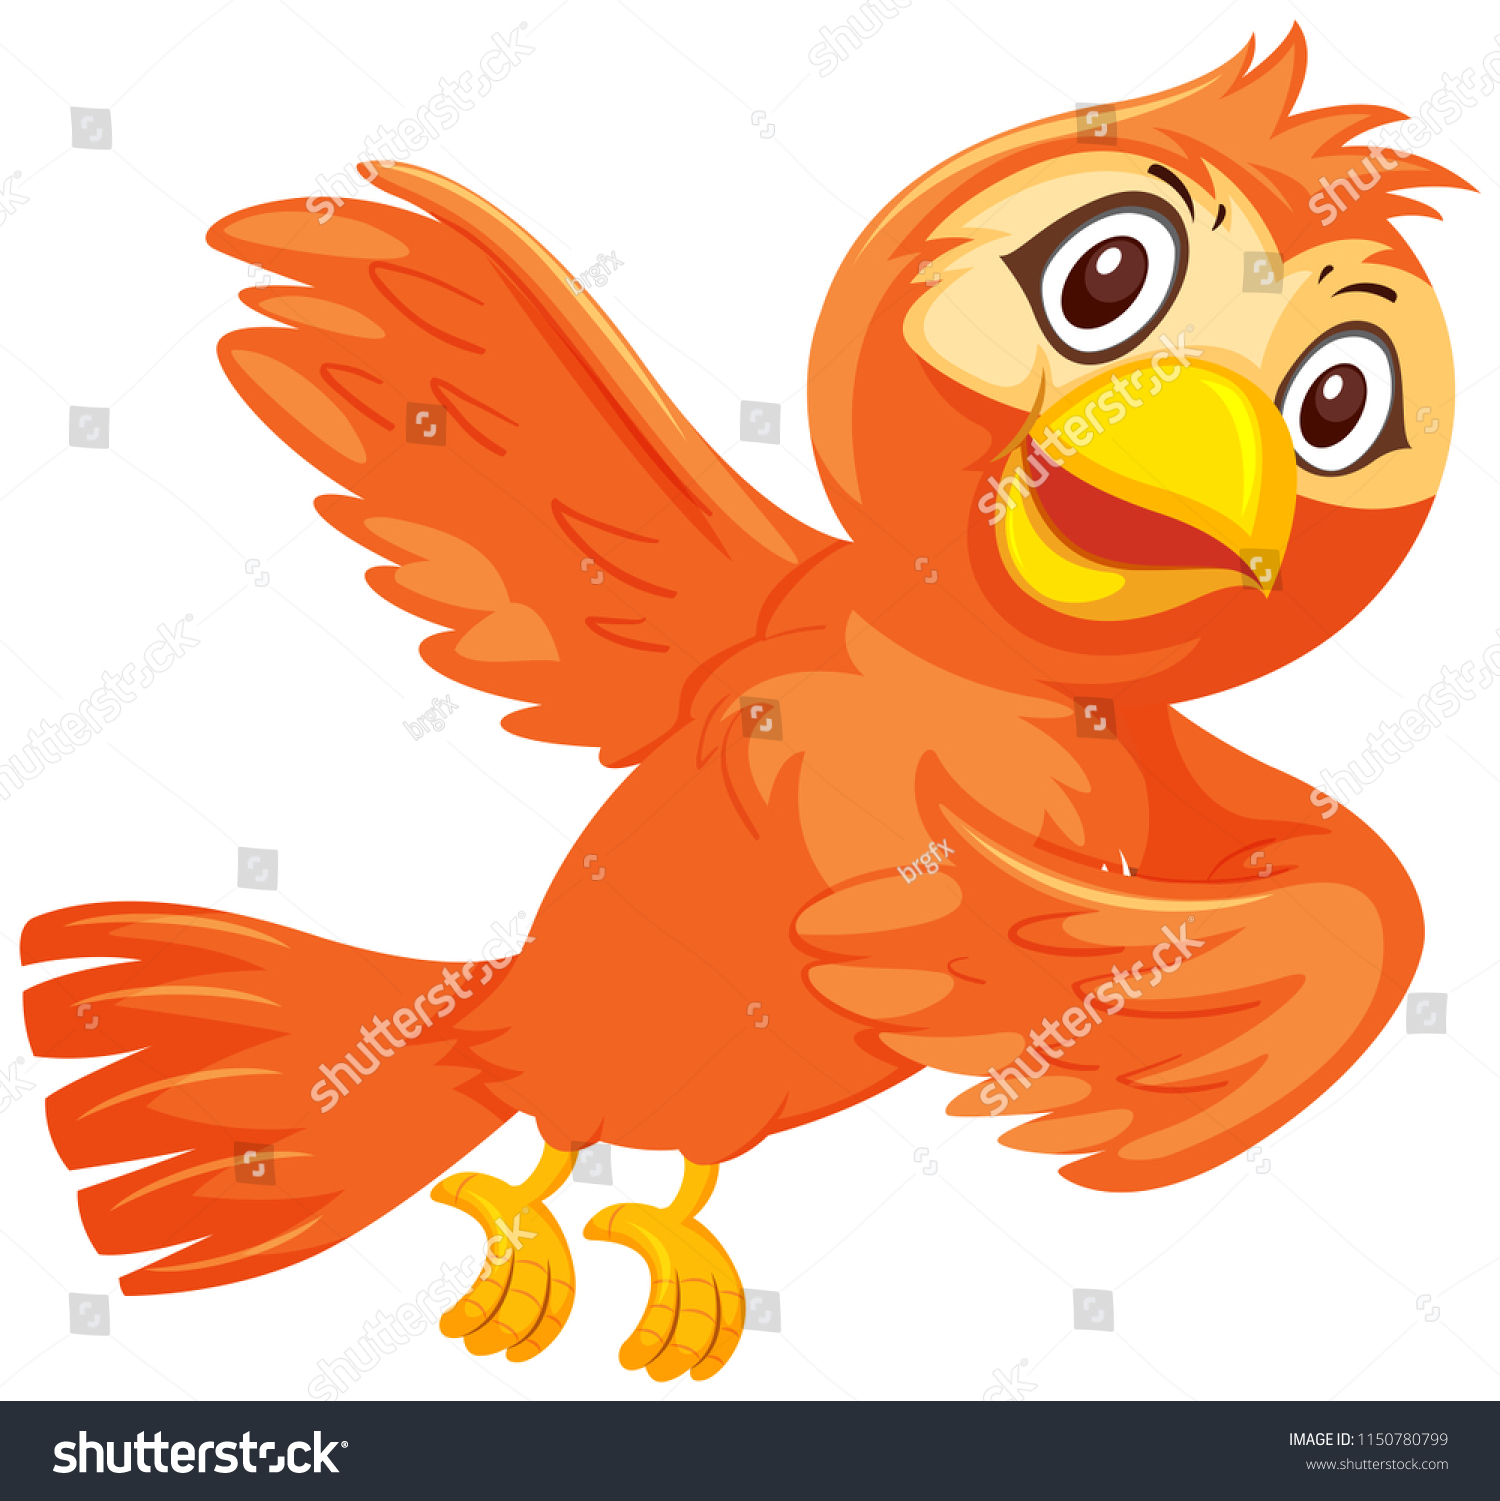 Птичка оранжевая BP vekmnf